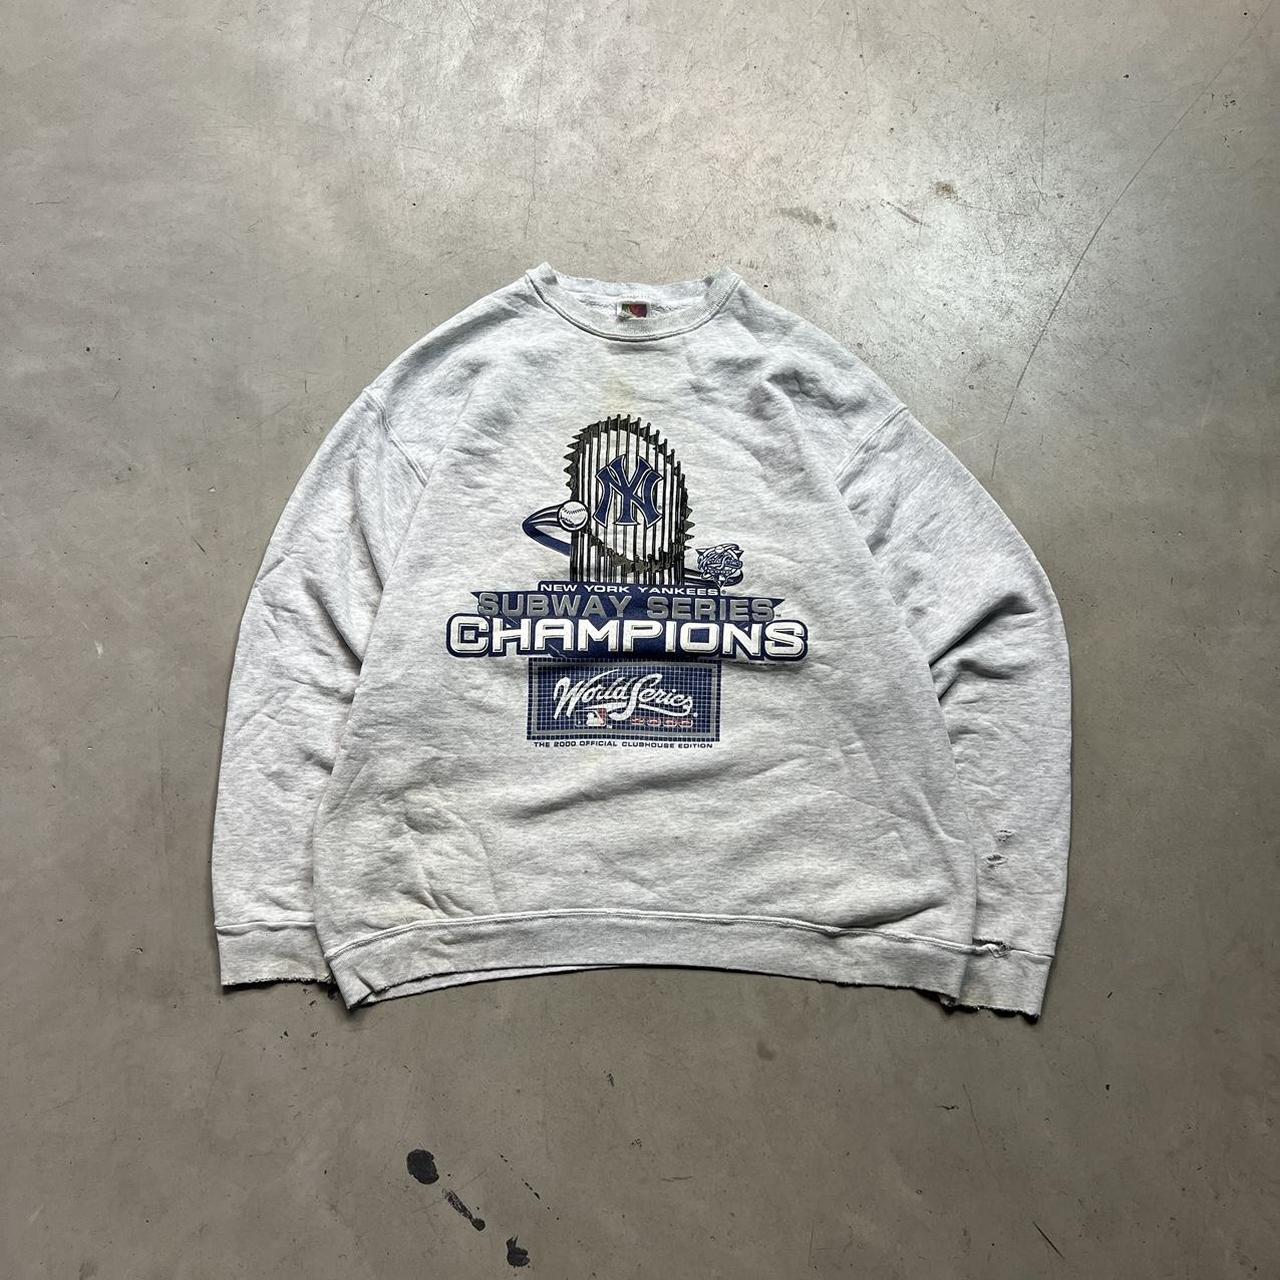 vintage Yankees World Series champions sweatshirt - Depop